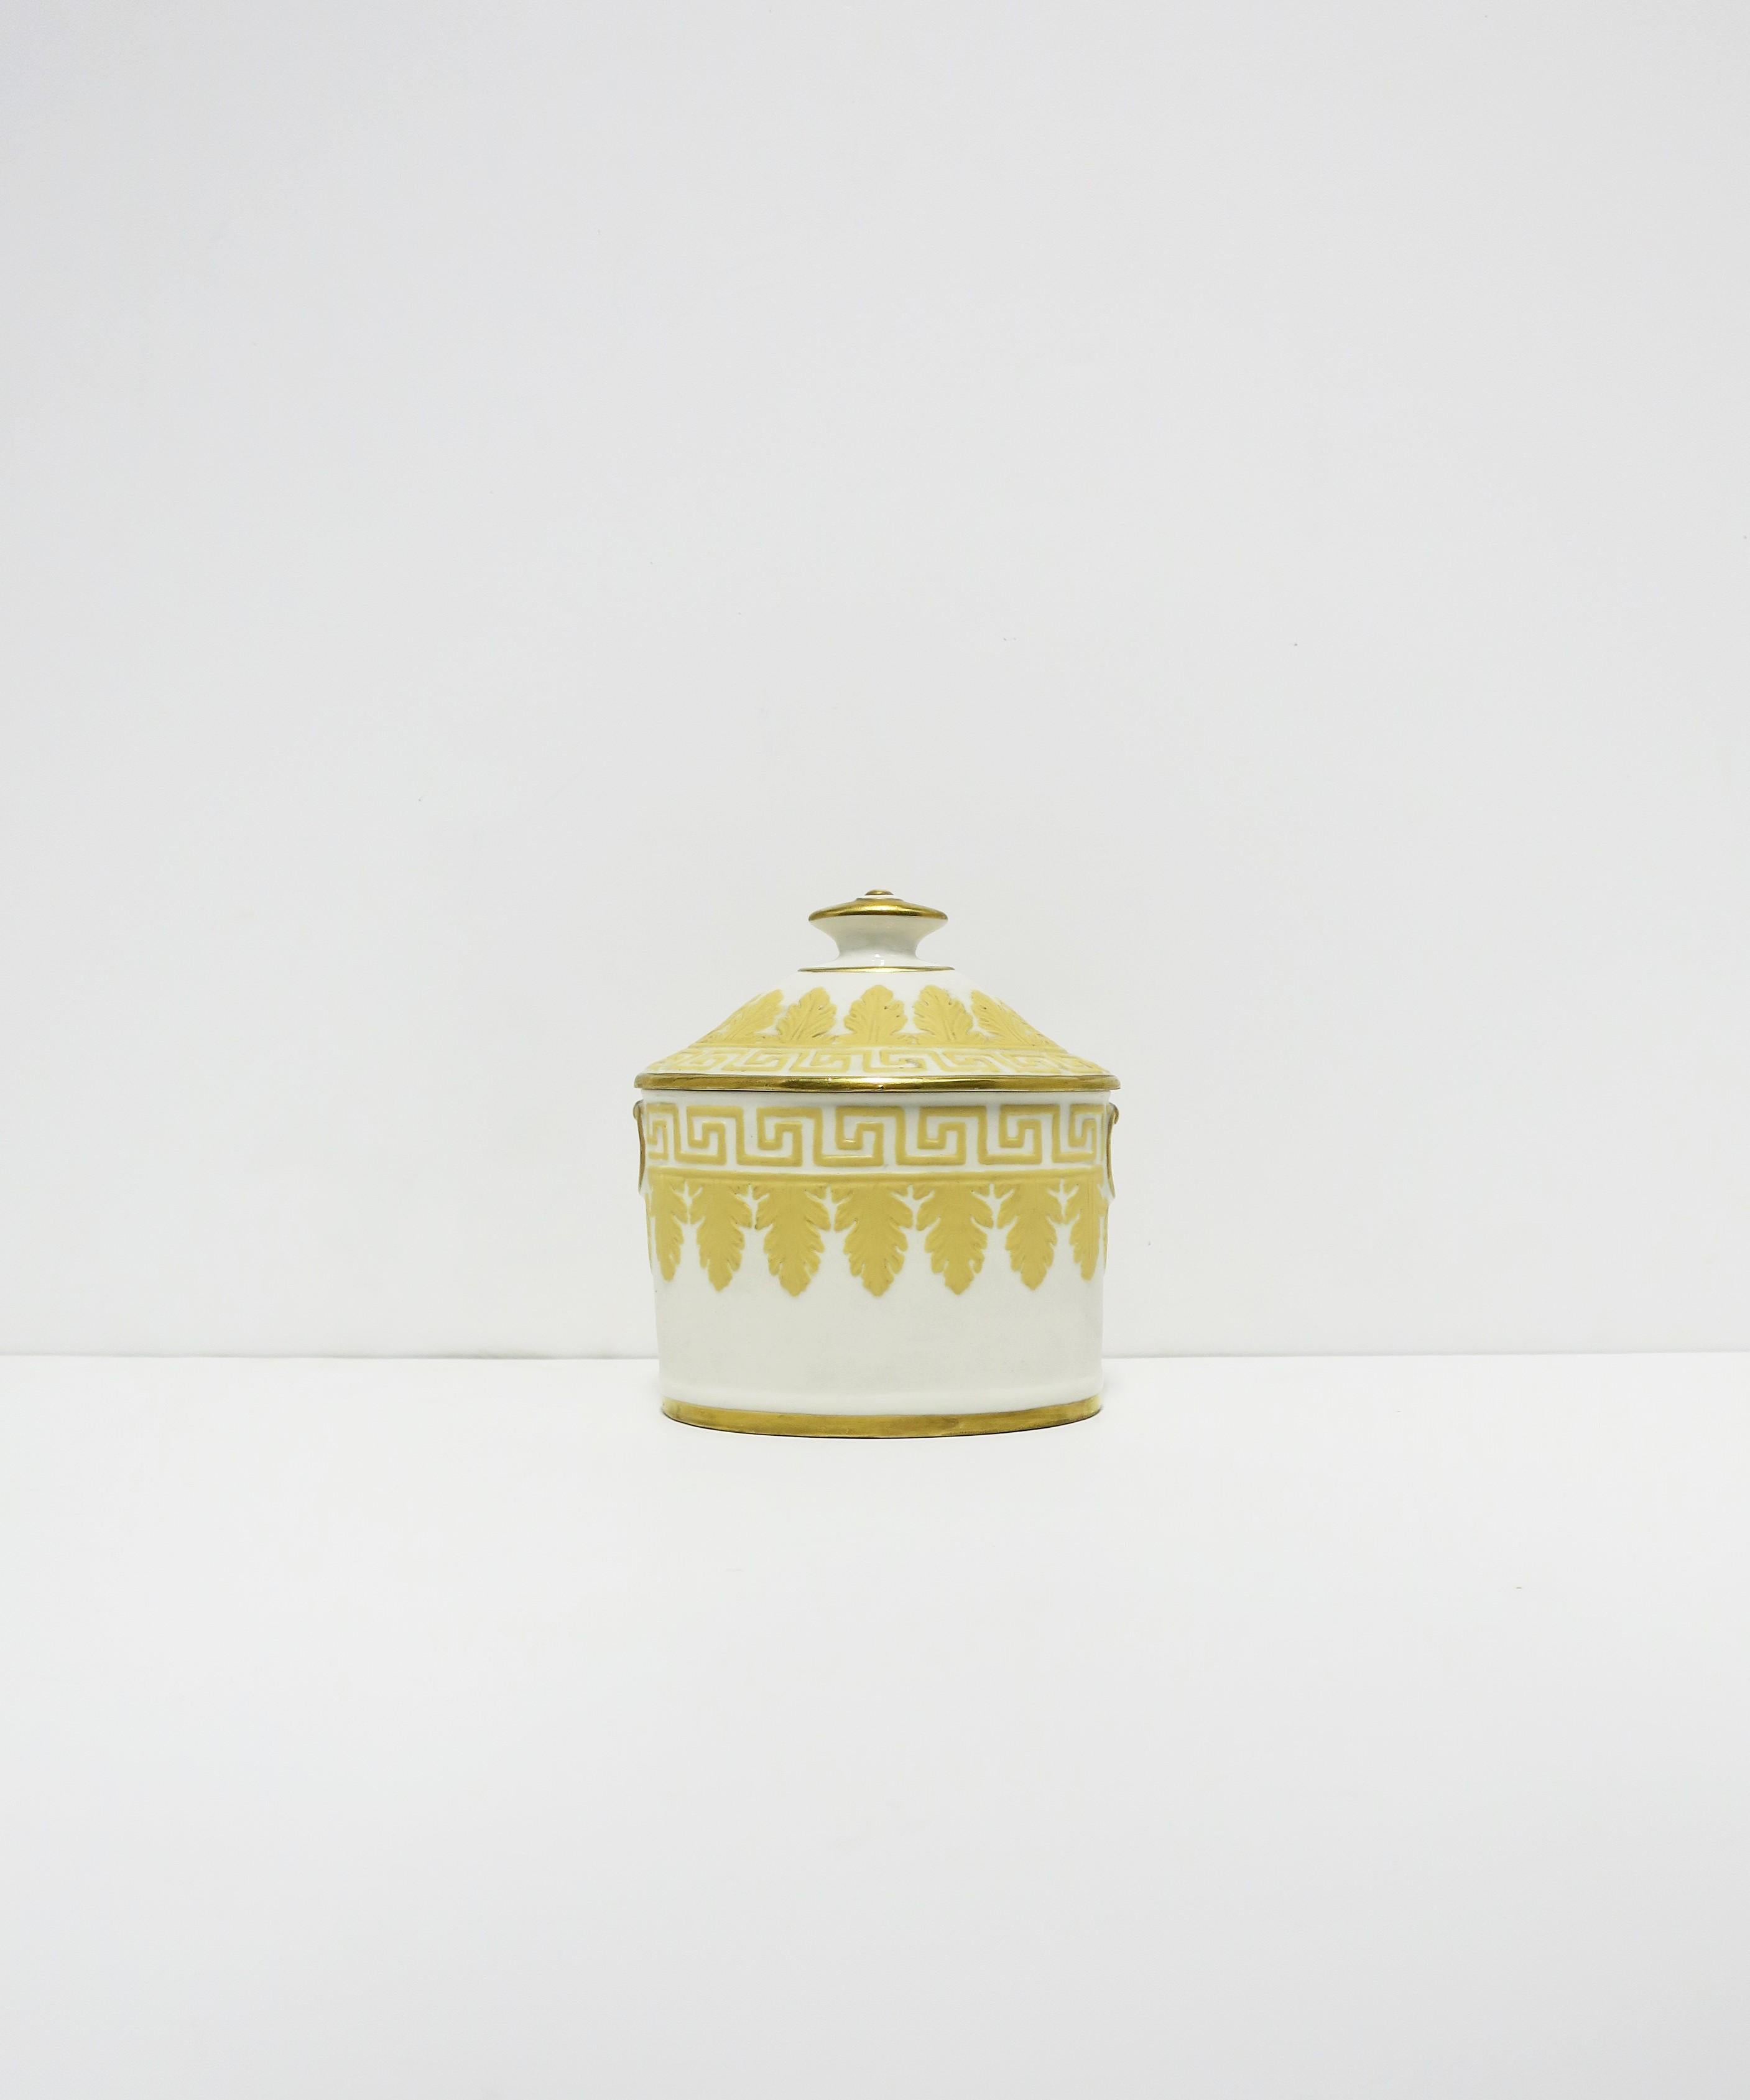 Magnifique boîte anglaise en jaspe avec feuilles d'acanthe et clé grecque, vers la fin du XIXe siècle, Angleterre. La pièce est attribuée à Wedgwood et au designer John Flaxman. La boîte est ovale, mate (non émaillée), avec une frise en relief jaune